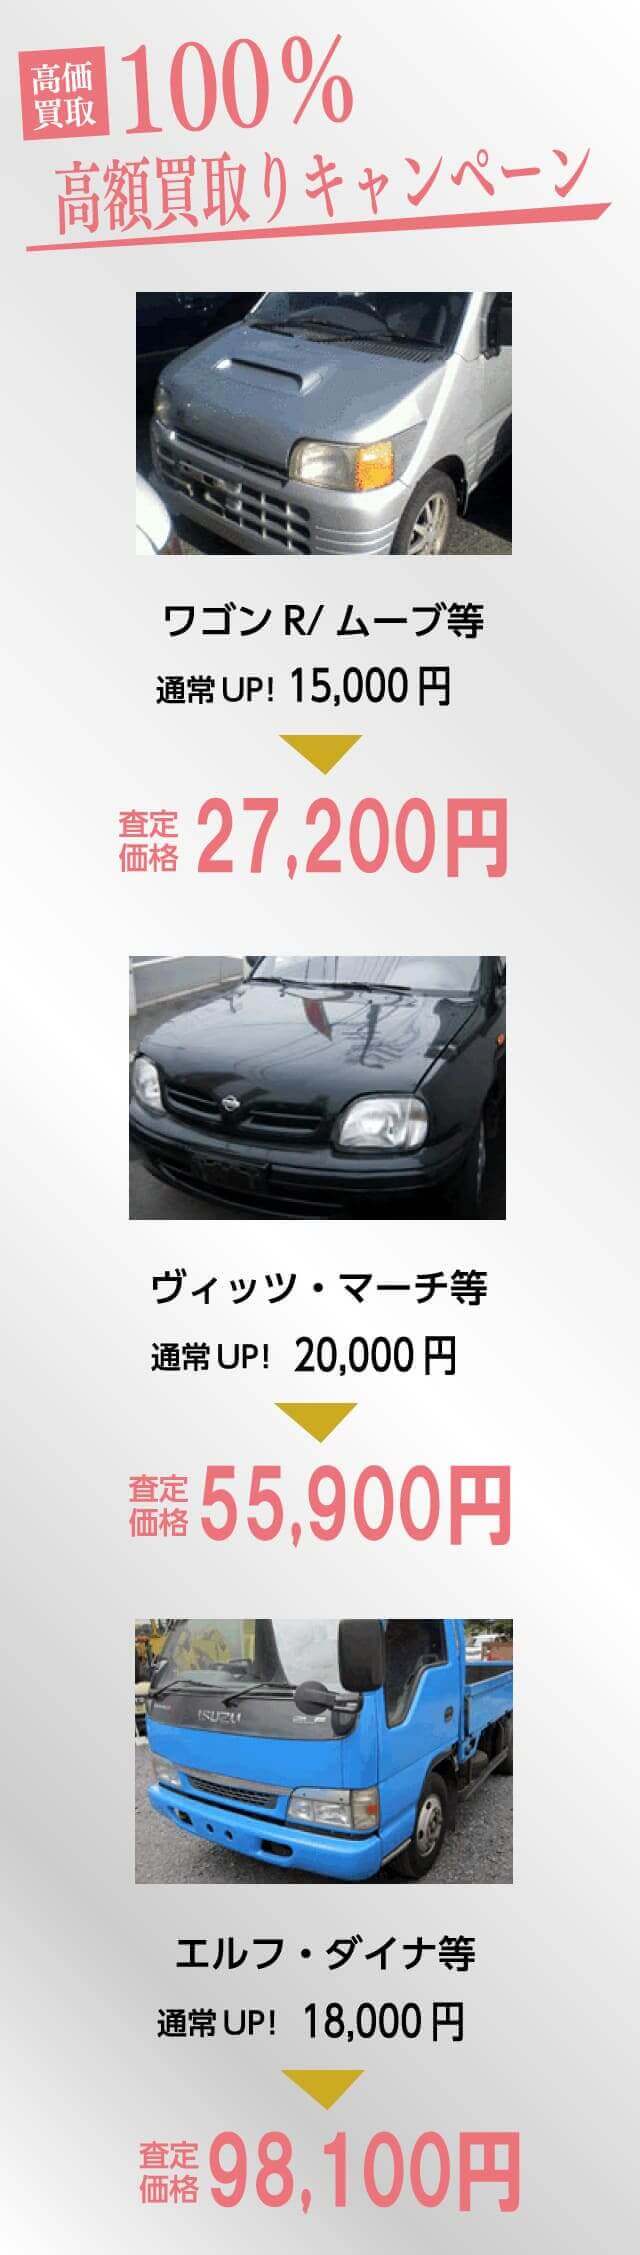 名古屋で廃車を高価で買取ります。100%高額買取キャンペーン